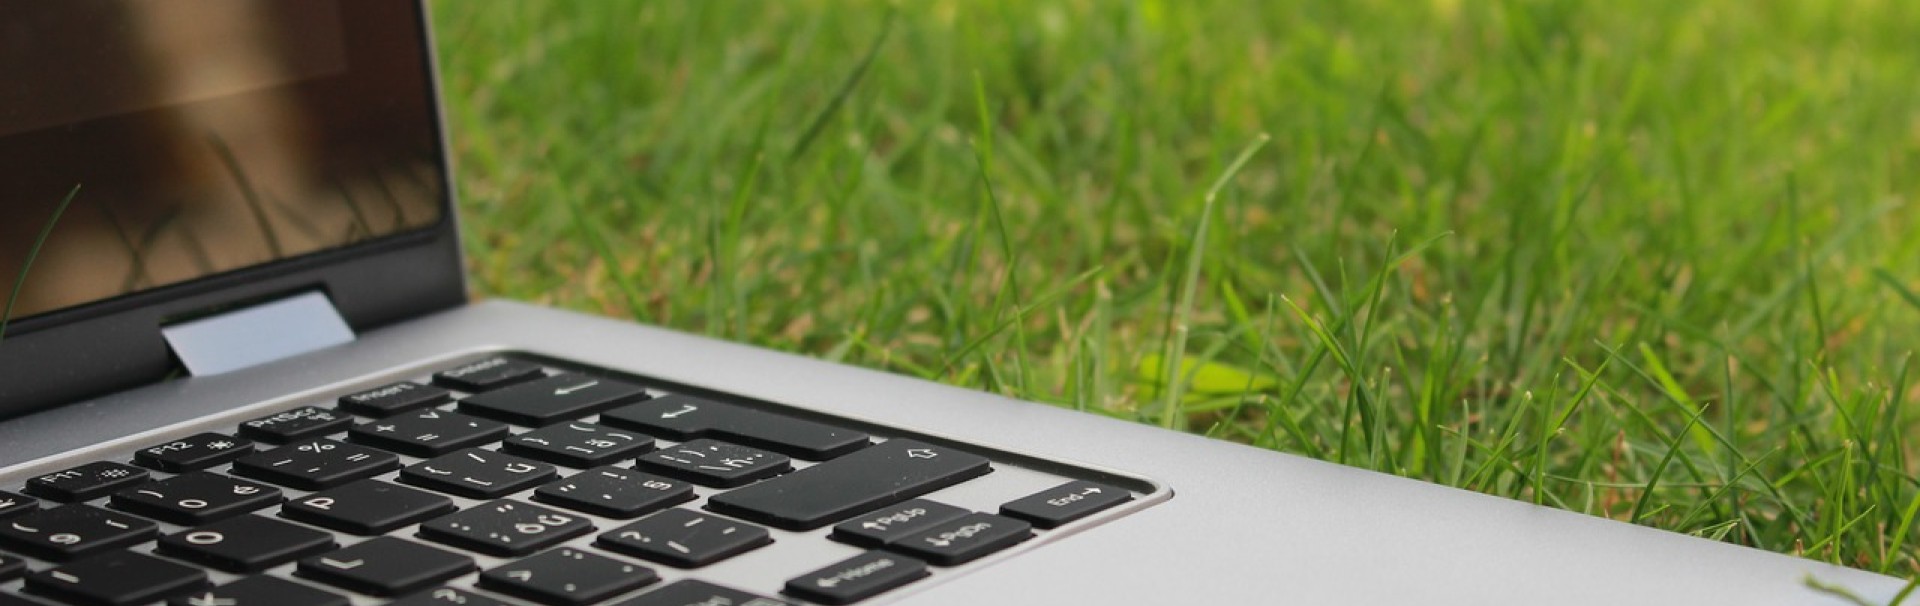 Ein aufgeklappter Laptop liegt im Gras.